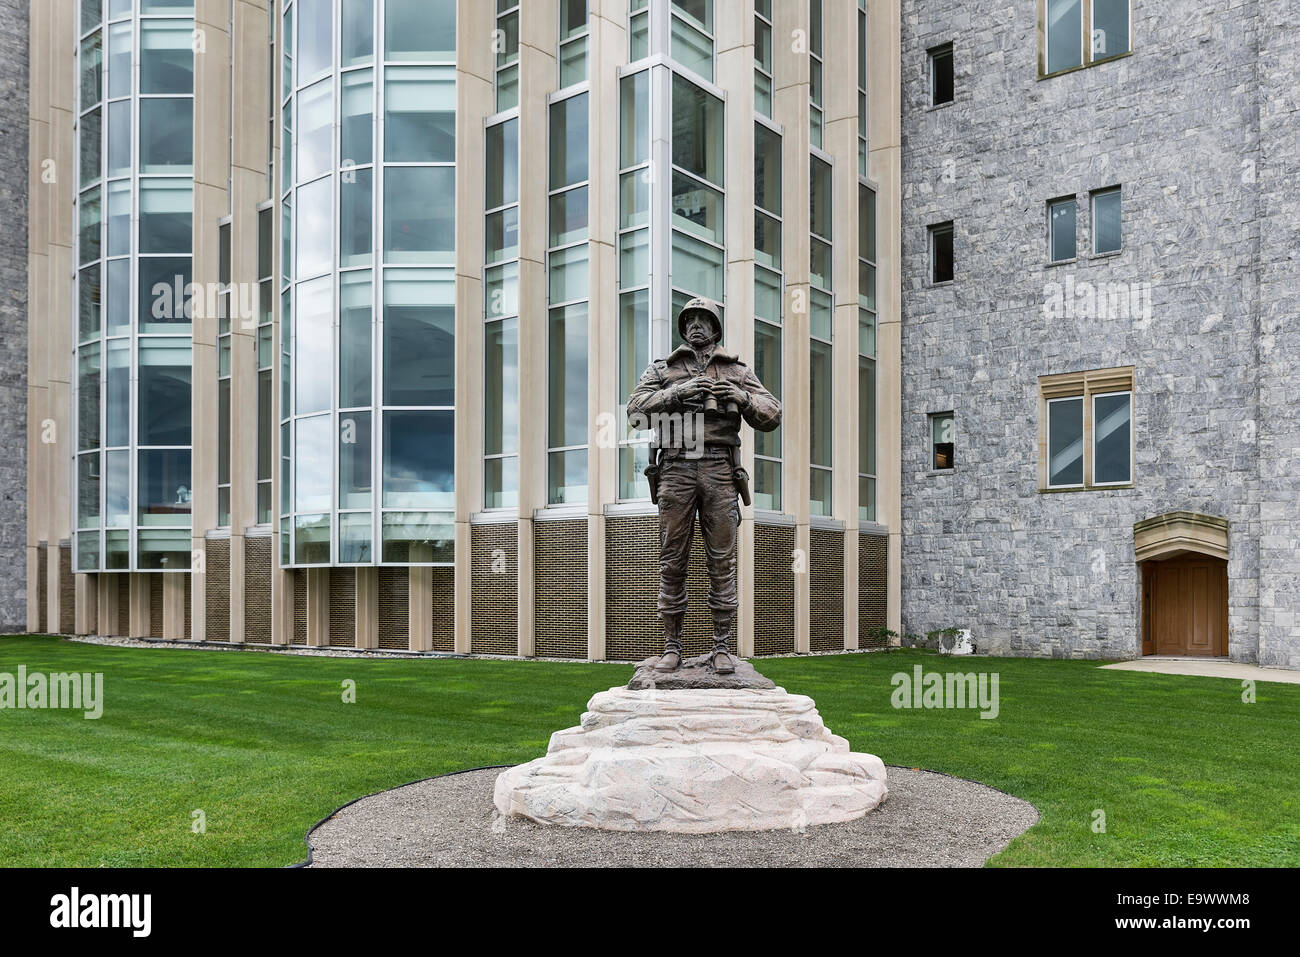 La scultura in bronzo del generale George Patton a West Point Accademia Militare, New York, Stati Uniti d'America Foto Stock